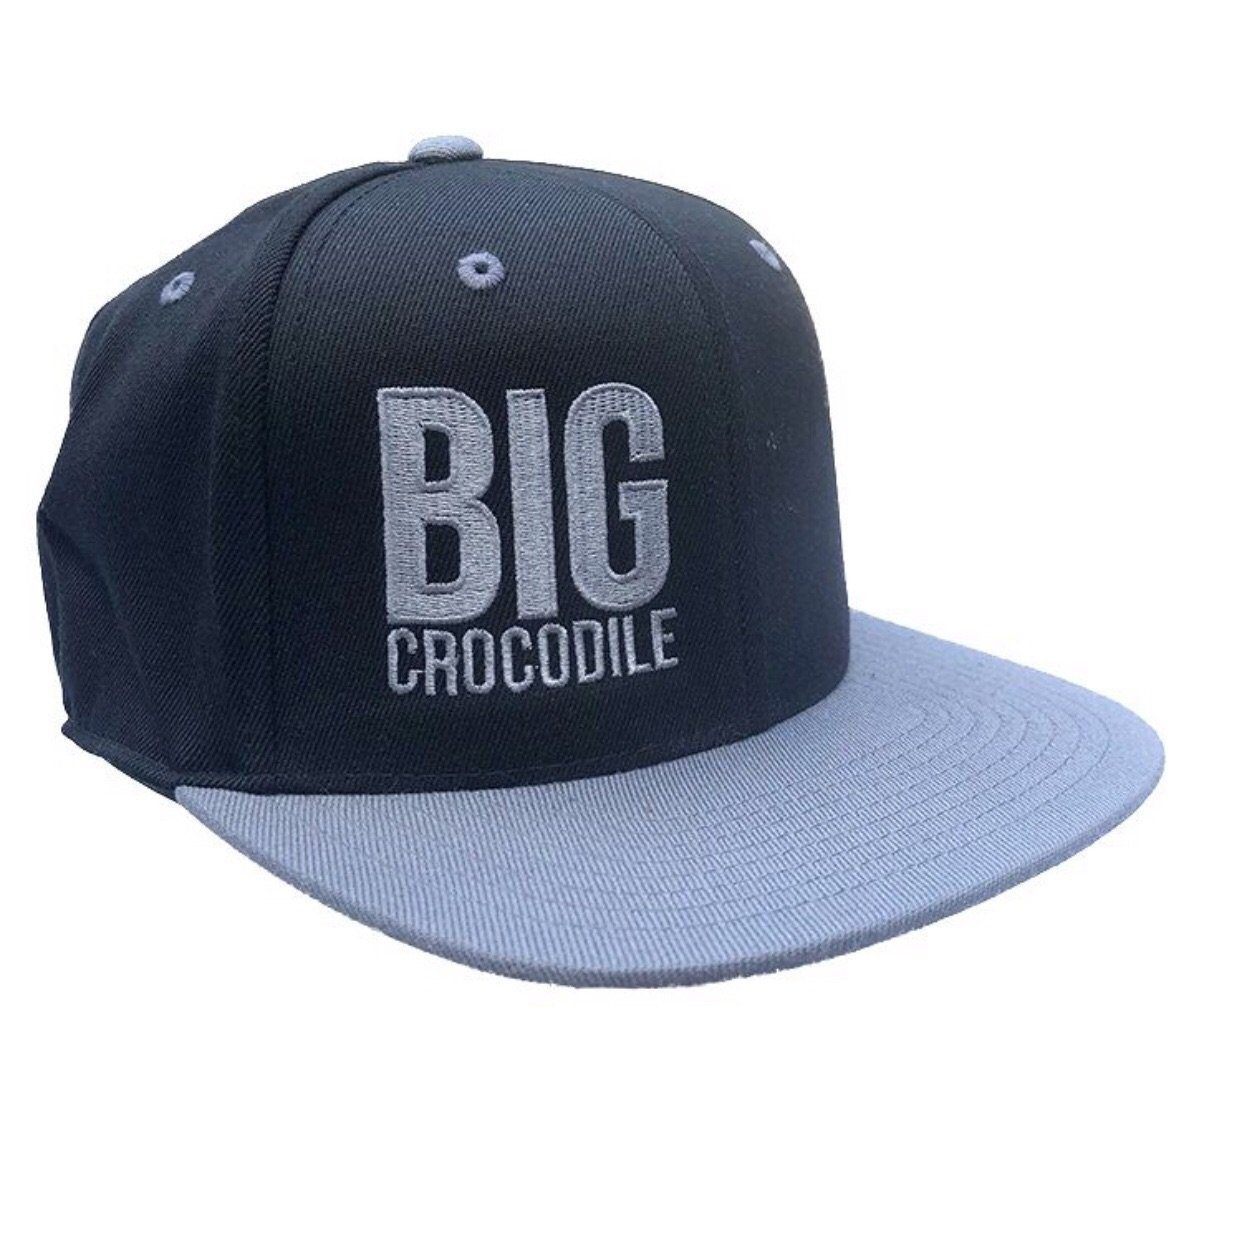 SnapBack Classic - Big Crocodile